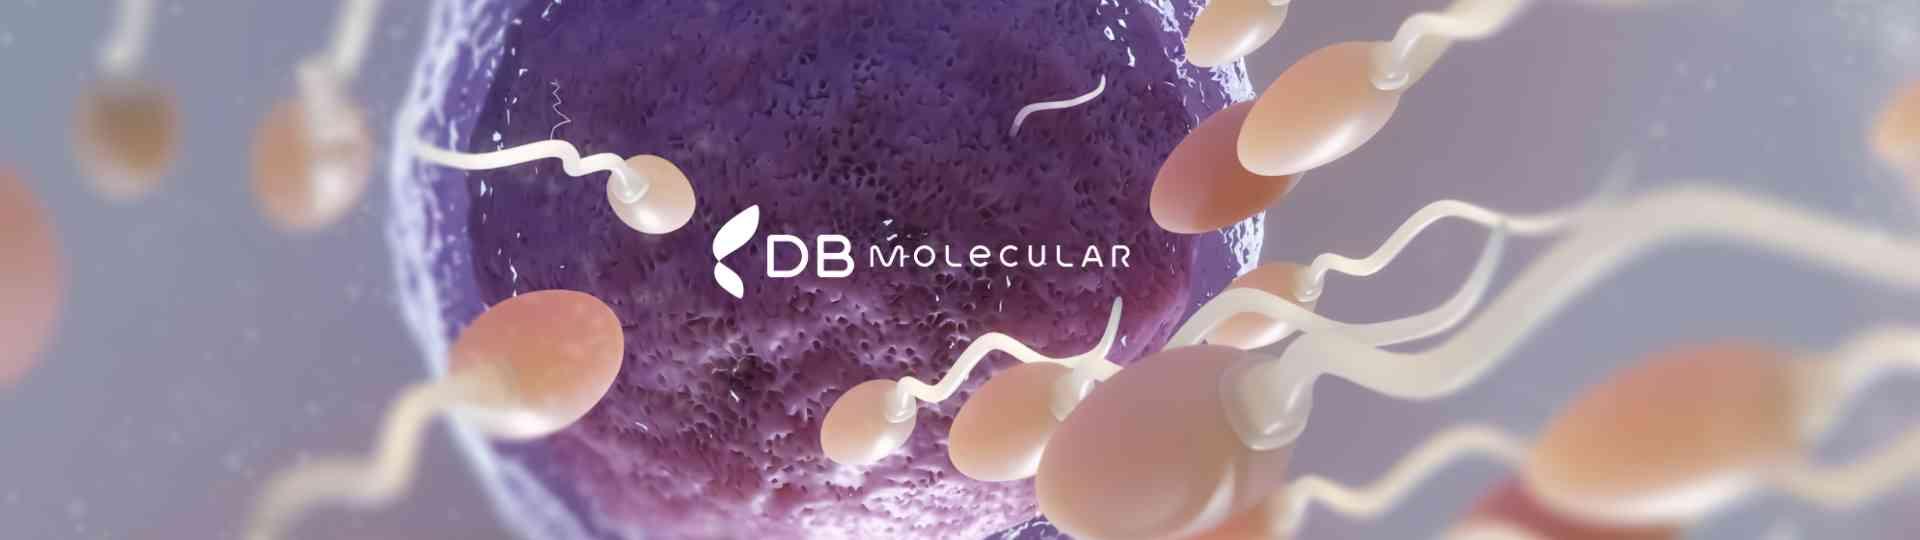 Frequência de anormalidades cromossômicas em homens e mulheres com infertilidade observadas em um laboratório de grande porte | Diagnósticos do Brasil